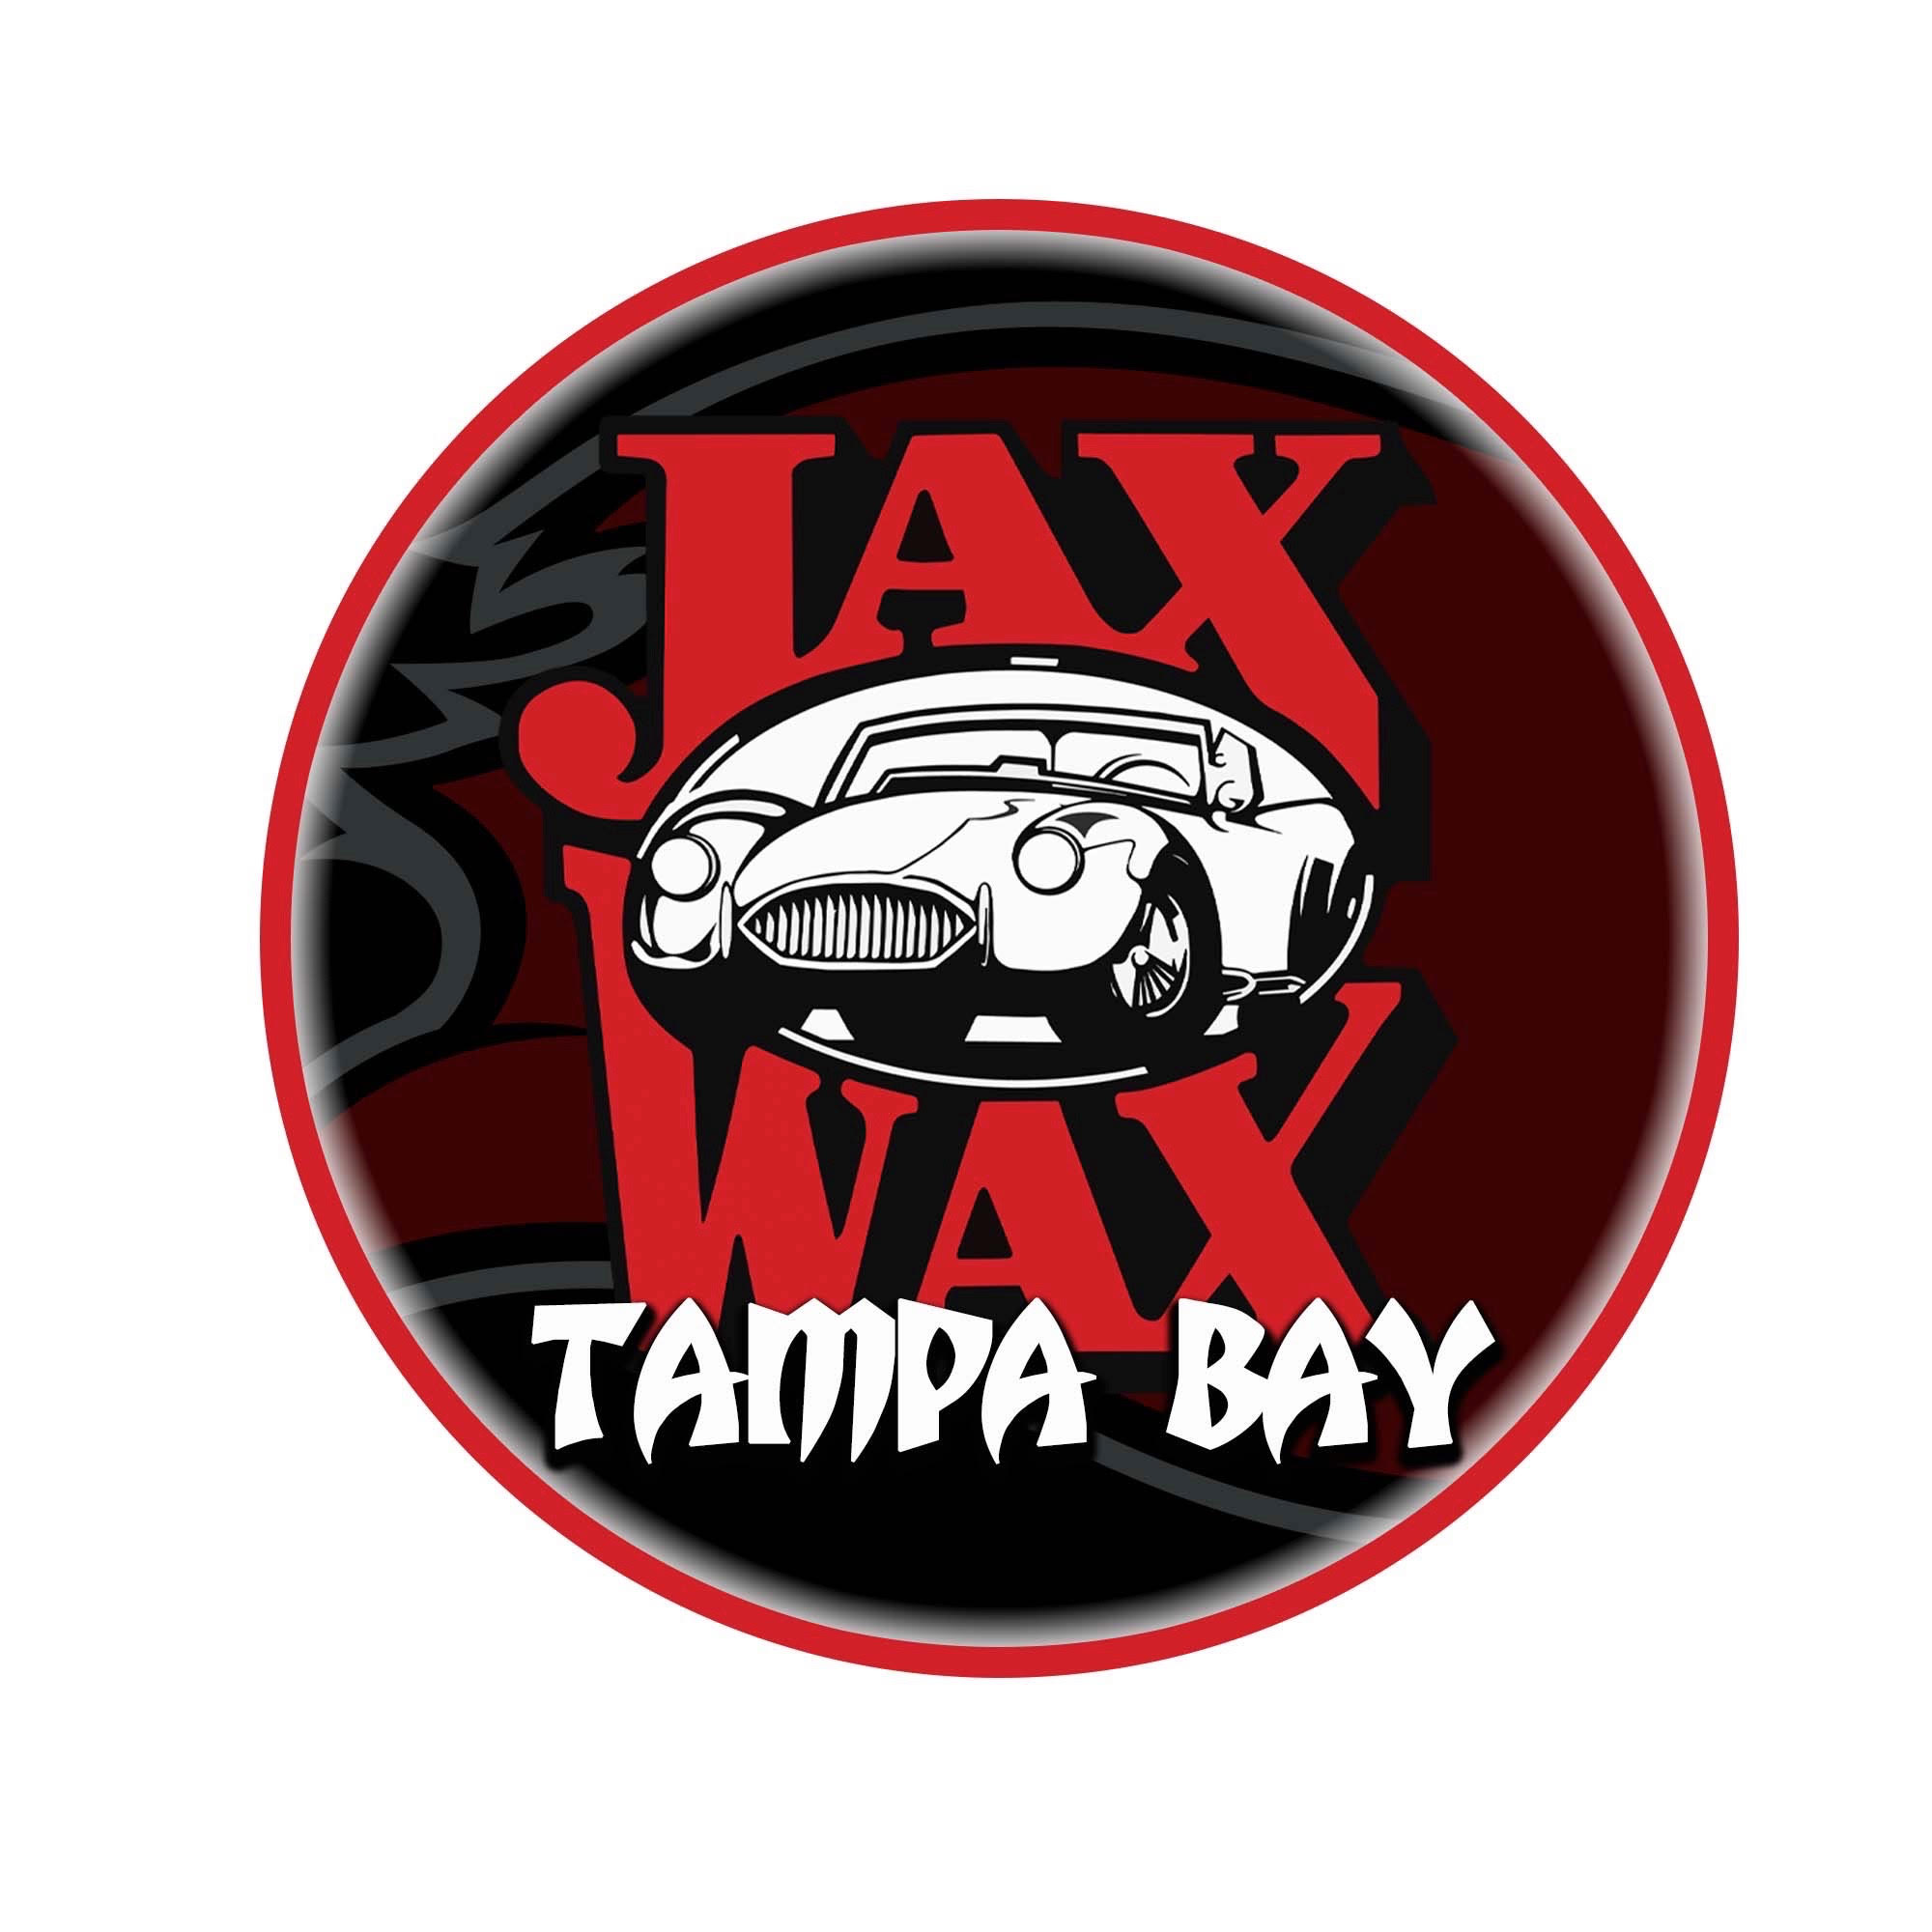 Jax Wax Tampa Bay